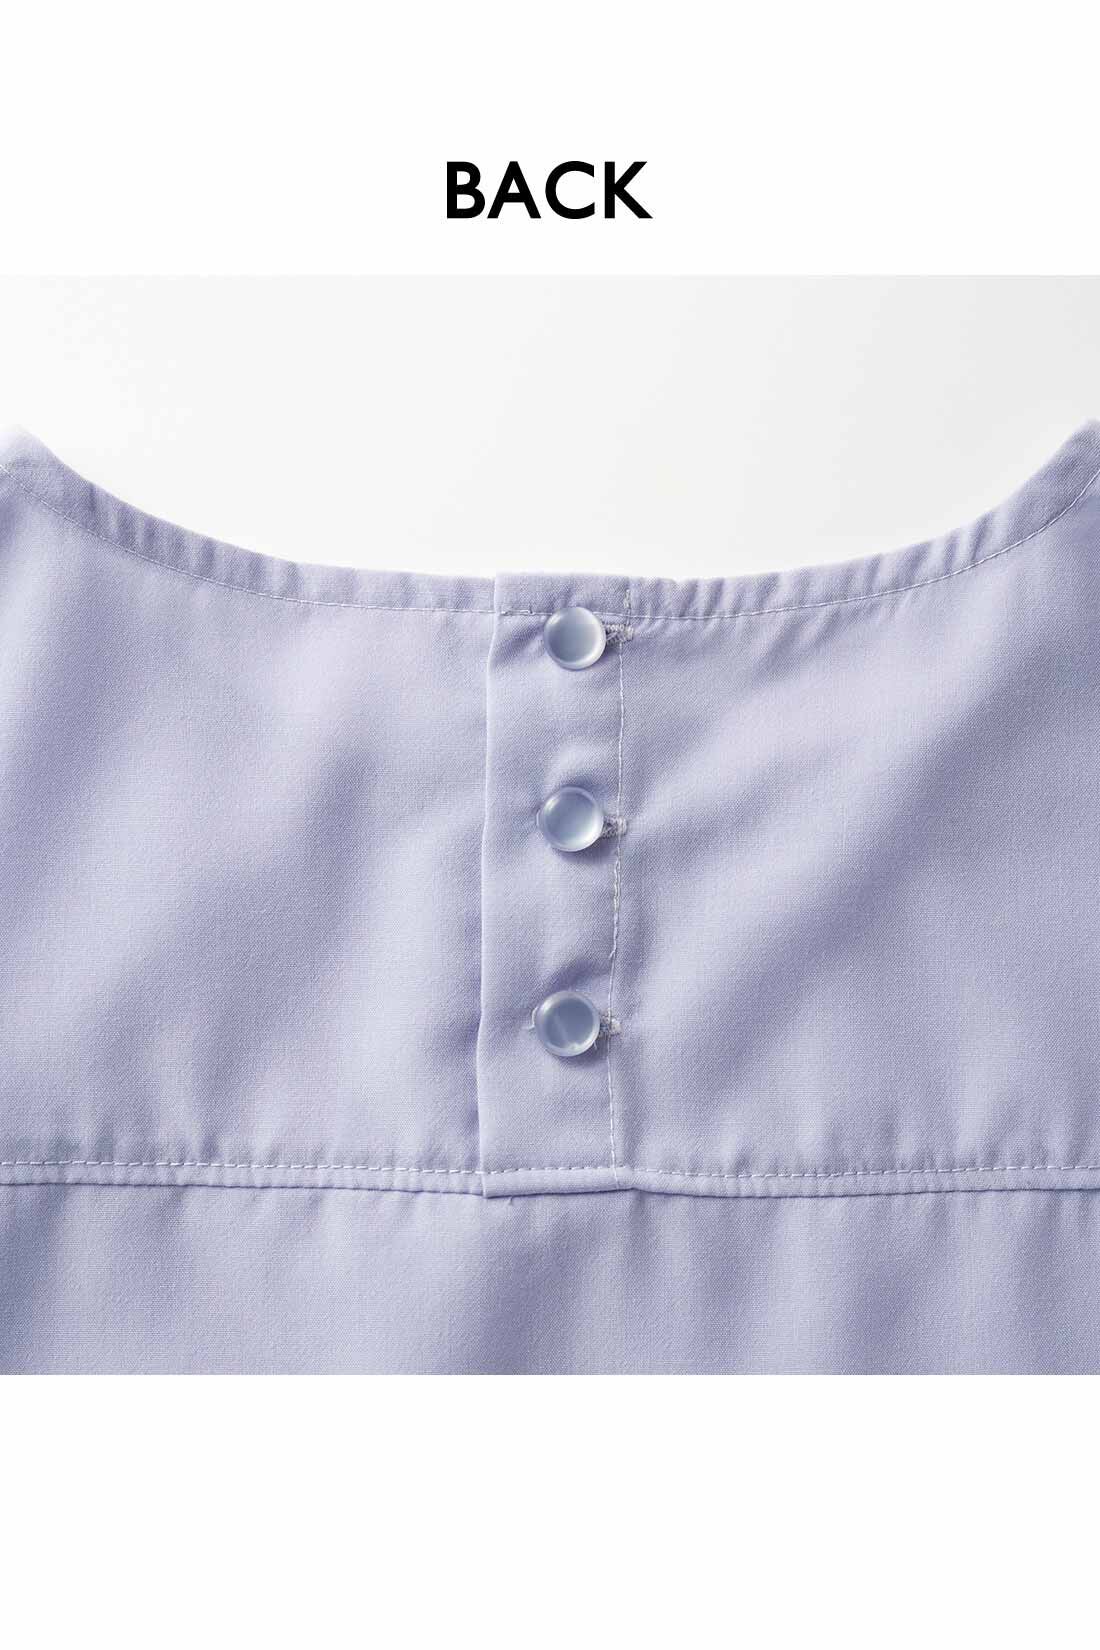 IEDIT|IEDIT[イディット]　ヴィンテージ風スパンローン素材のしわが気になりにくいシャツライクトップス〈チャコール〉|背中のボタンは、デザインポイントにも。ヨークでシャツのきちんと感もプラス。お届けするカラーとは異なります。